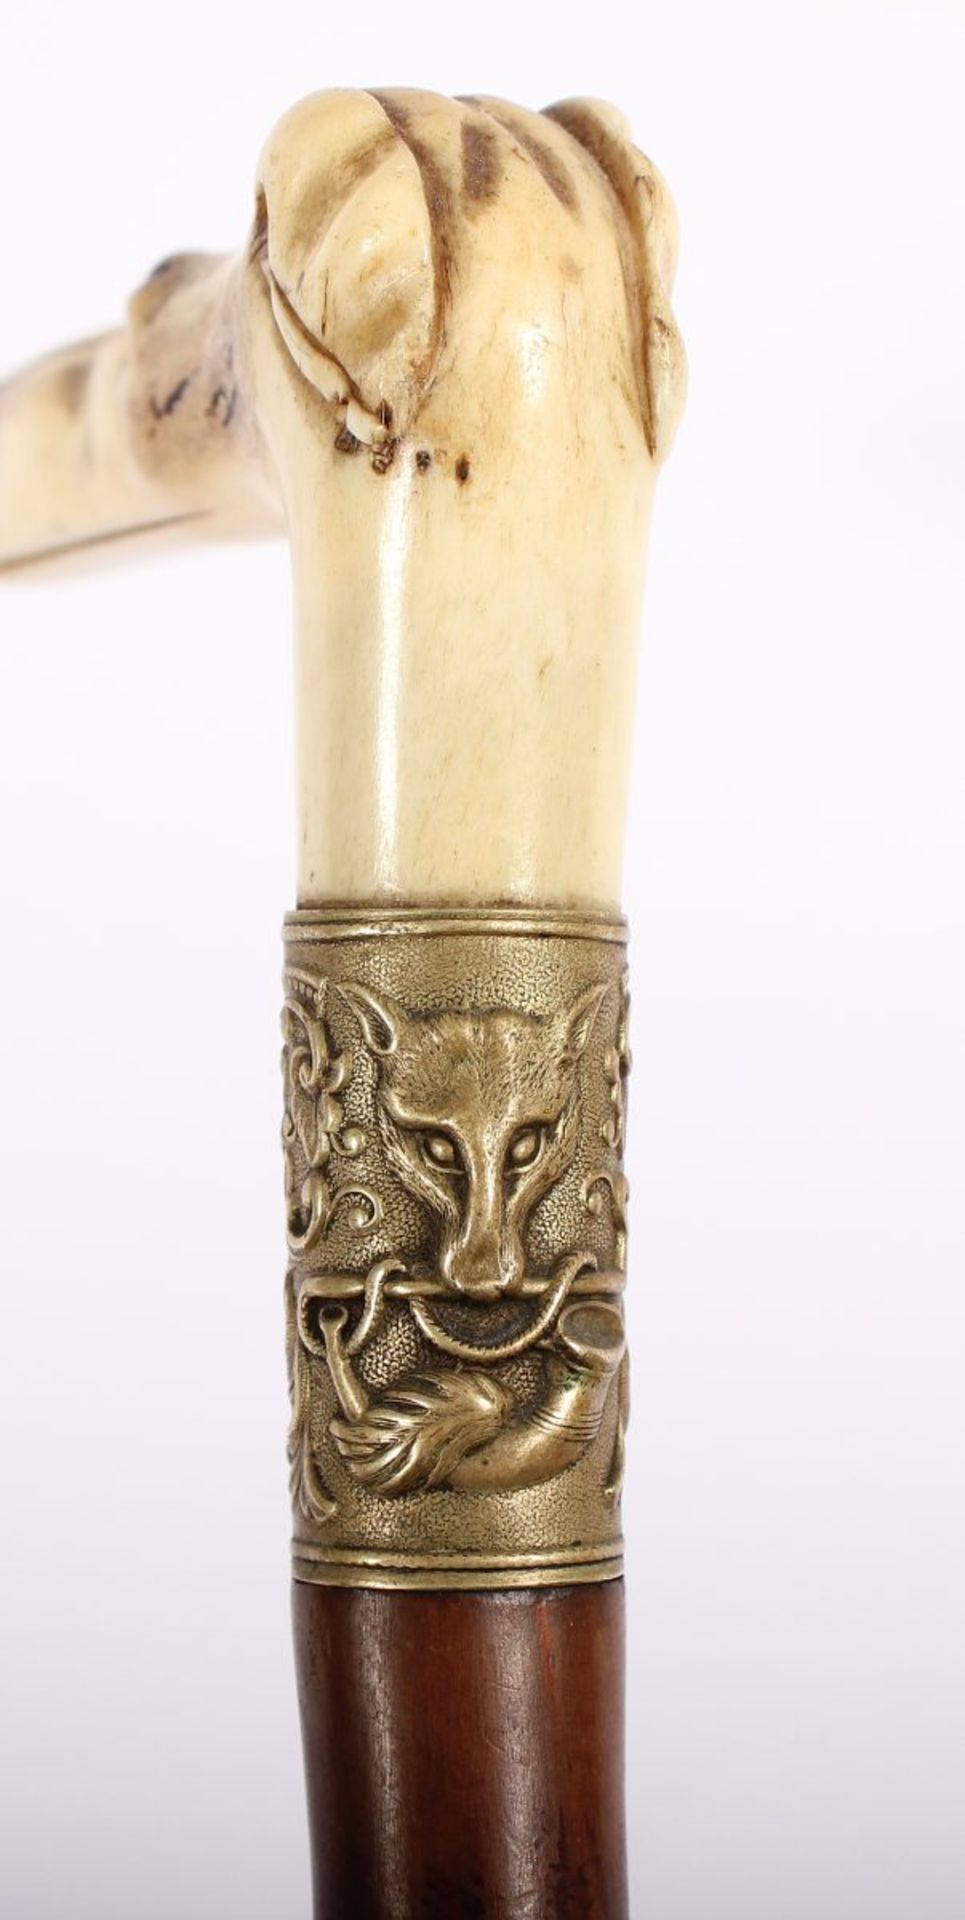 SPAZIERSTOCK, Elfenbeingriff in Form eines Hundekopfes, eingesetzte Glasaugen, Metallmanschette, - Bild 3 aus 3